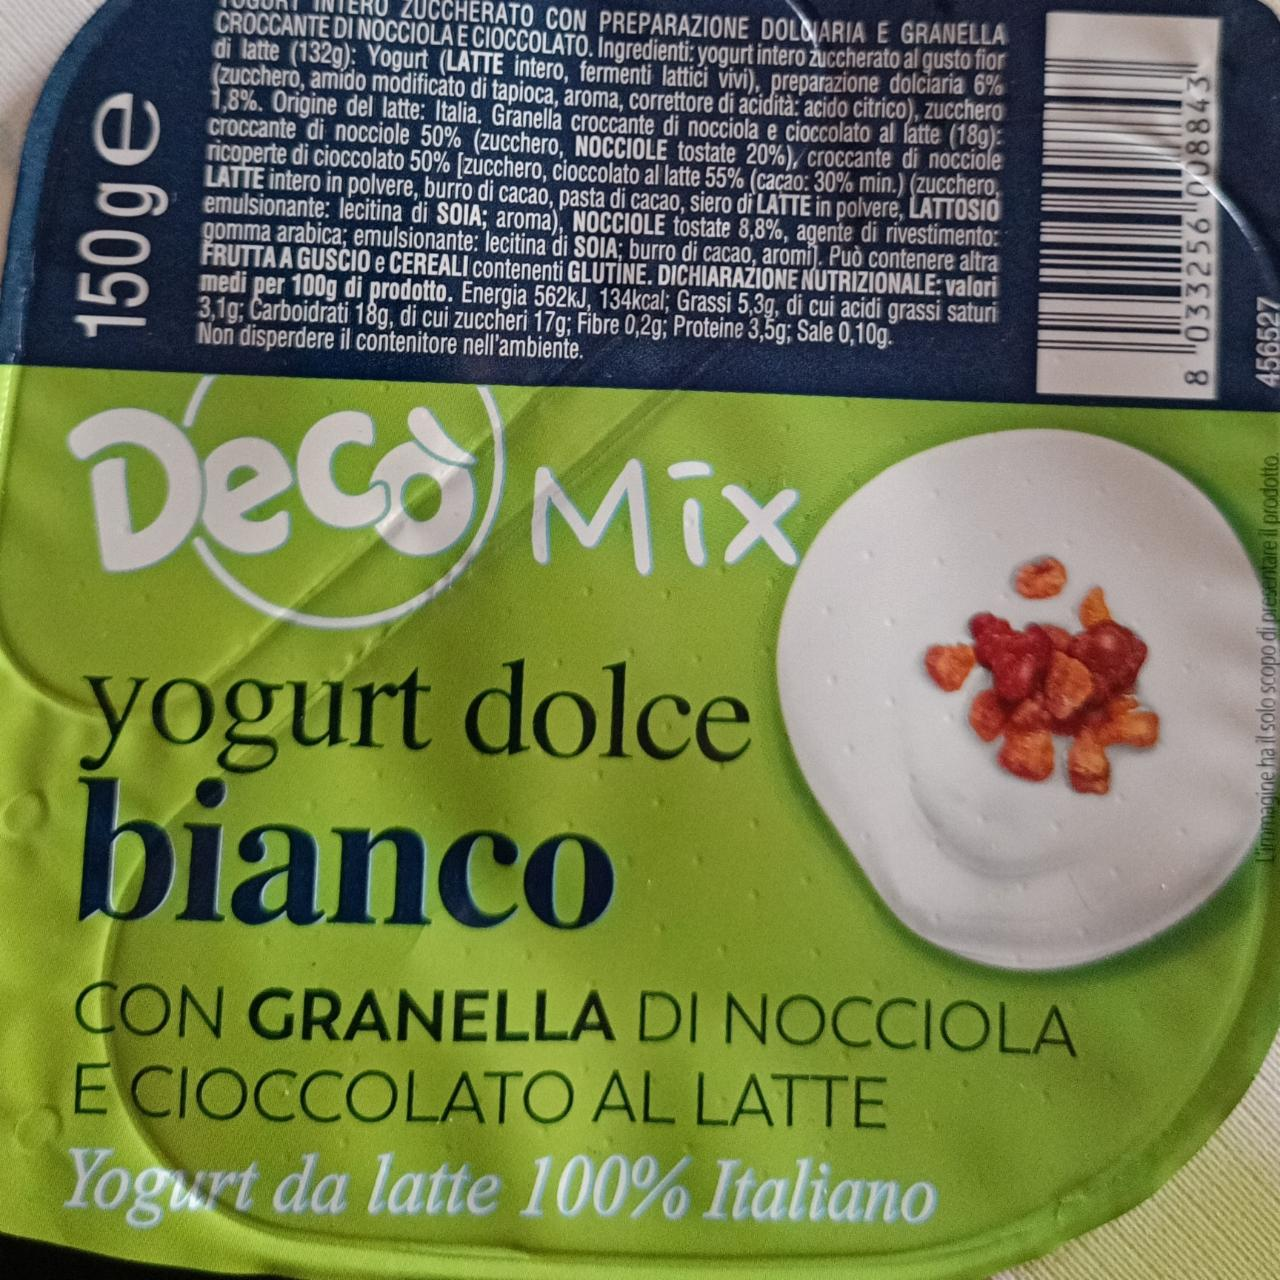 Fotografie - Yogurt dolce bianco con Granella di Nocciola e Cioccolato al latte Decò